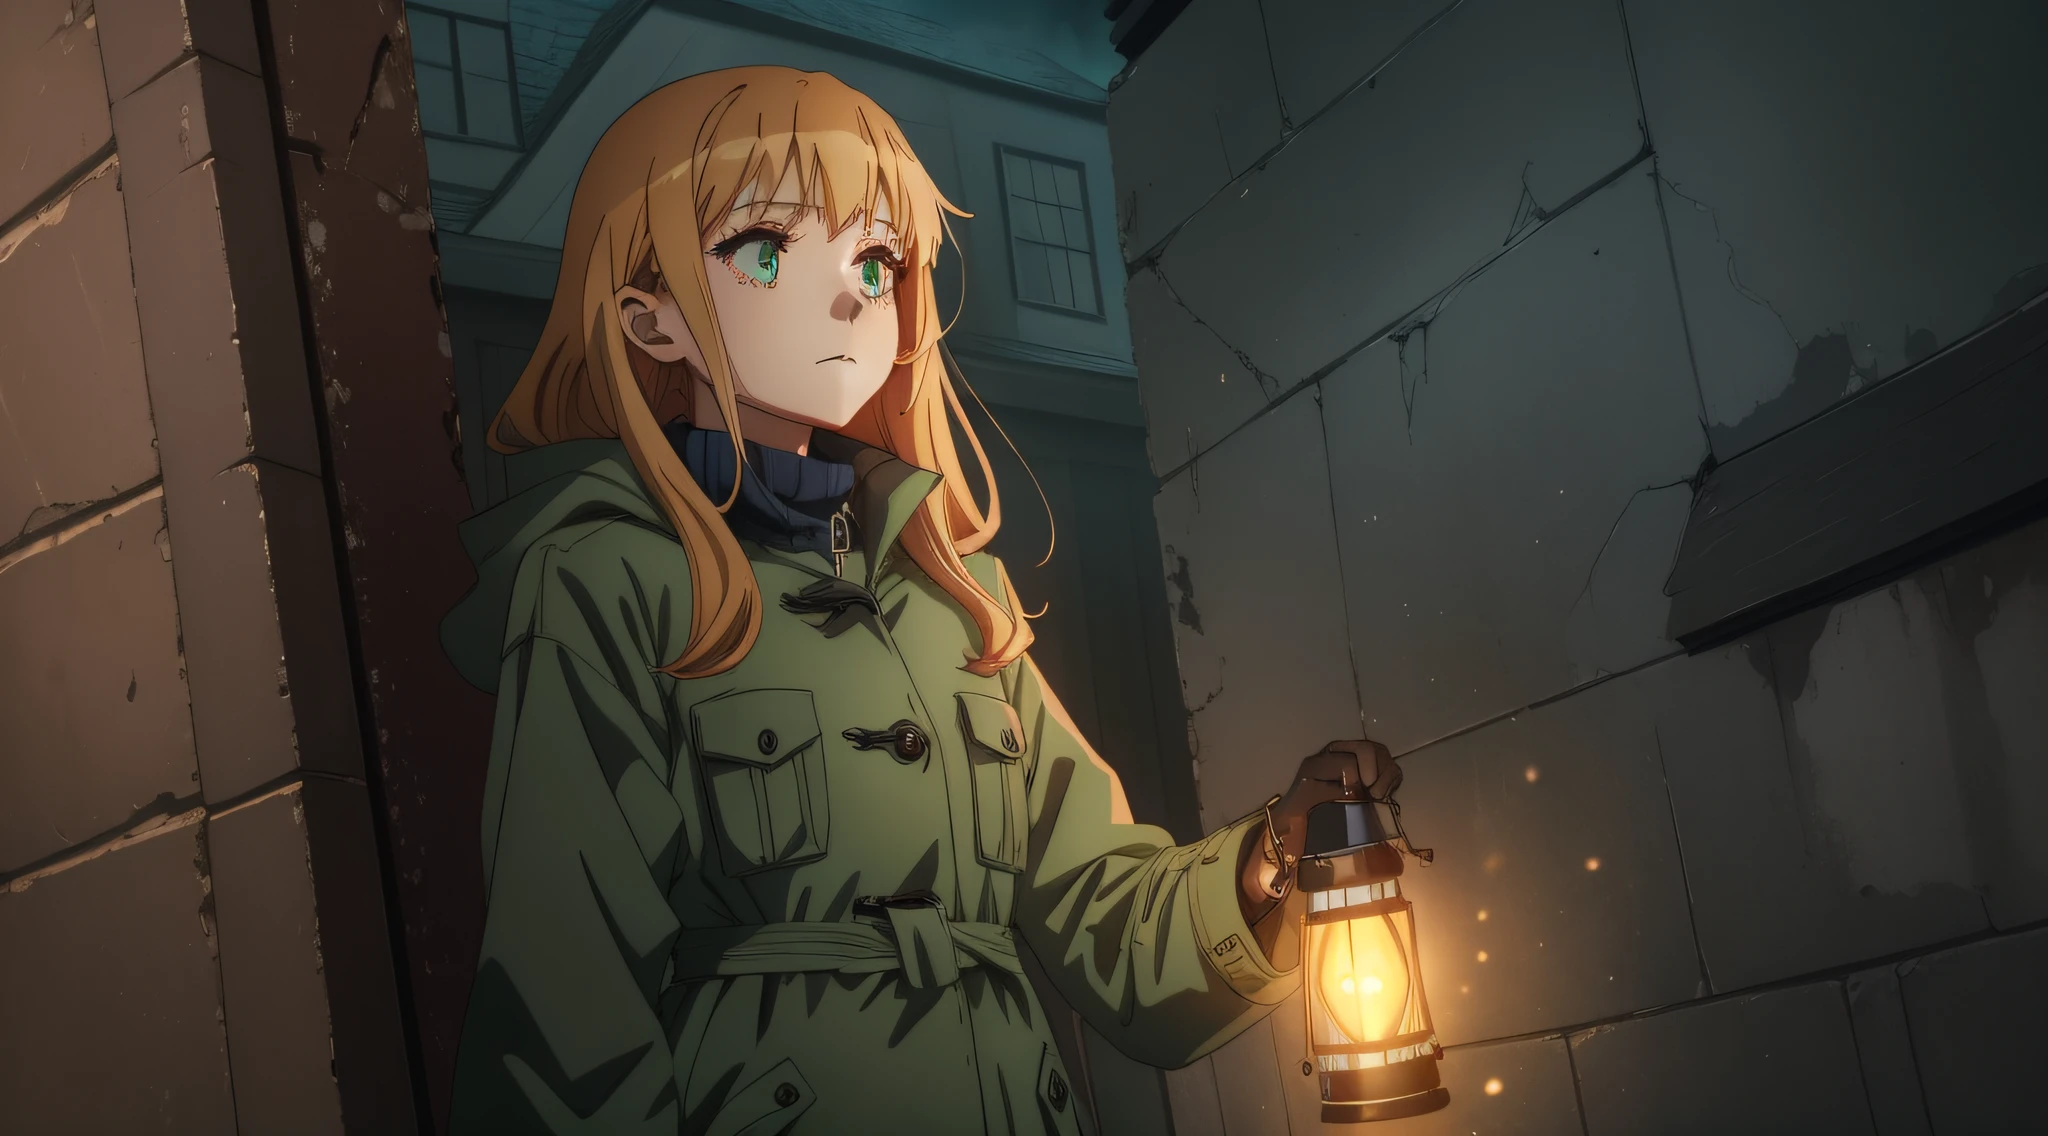 Uma linda mulher com casaco entra em uma casa mal-assombrada segurando uma lanterna à noite, 2.Estilo anime 5D